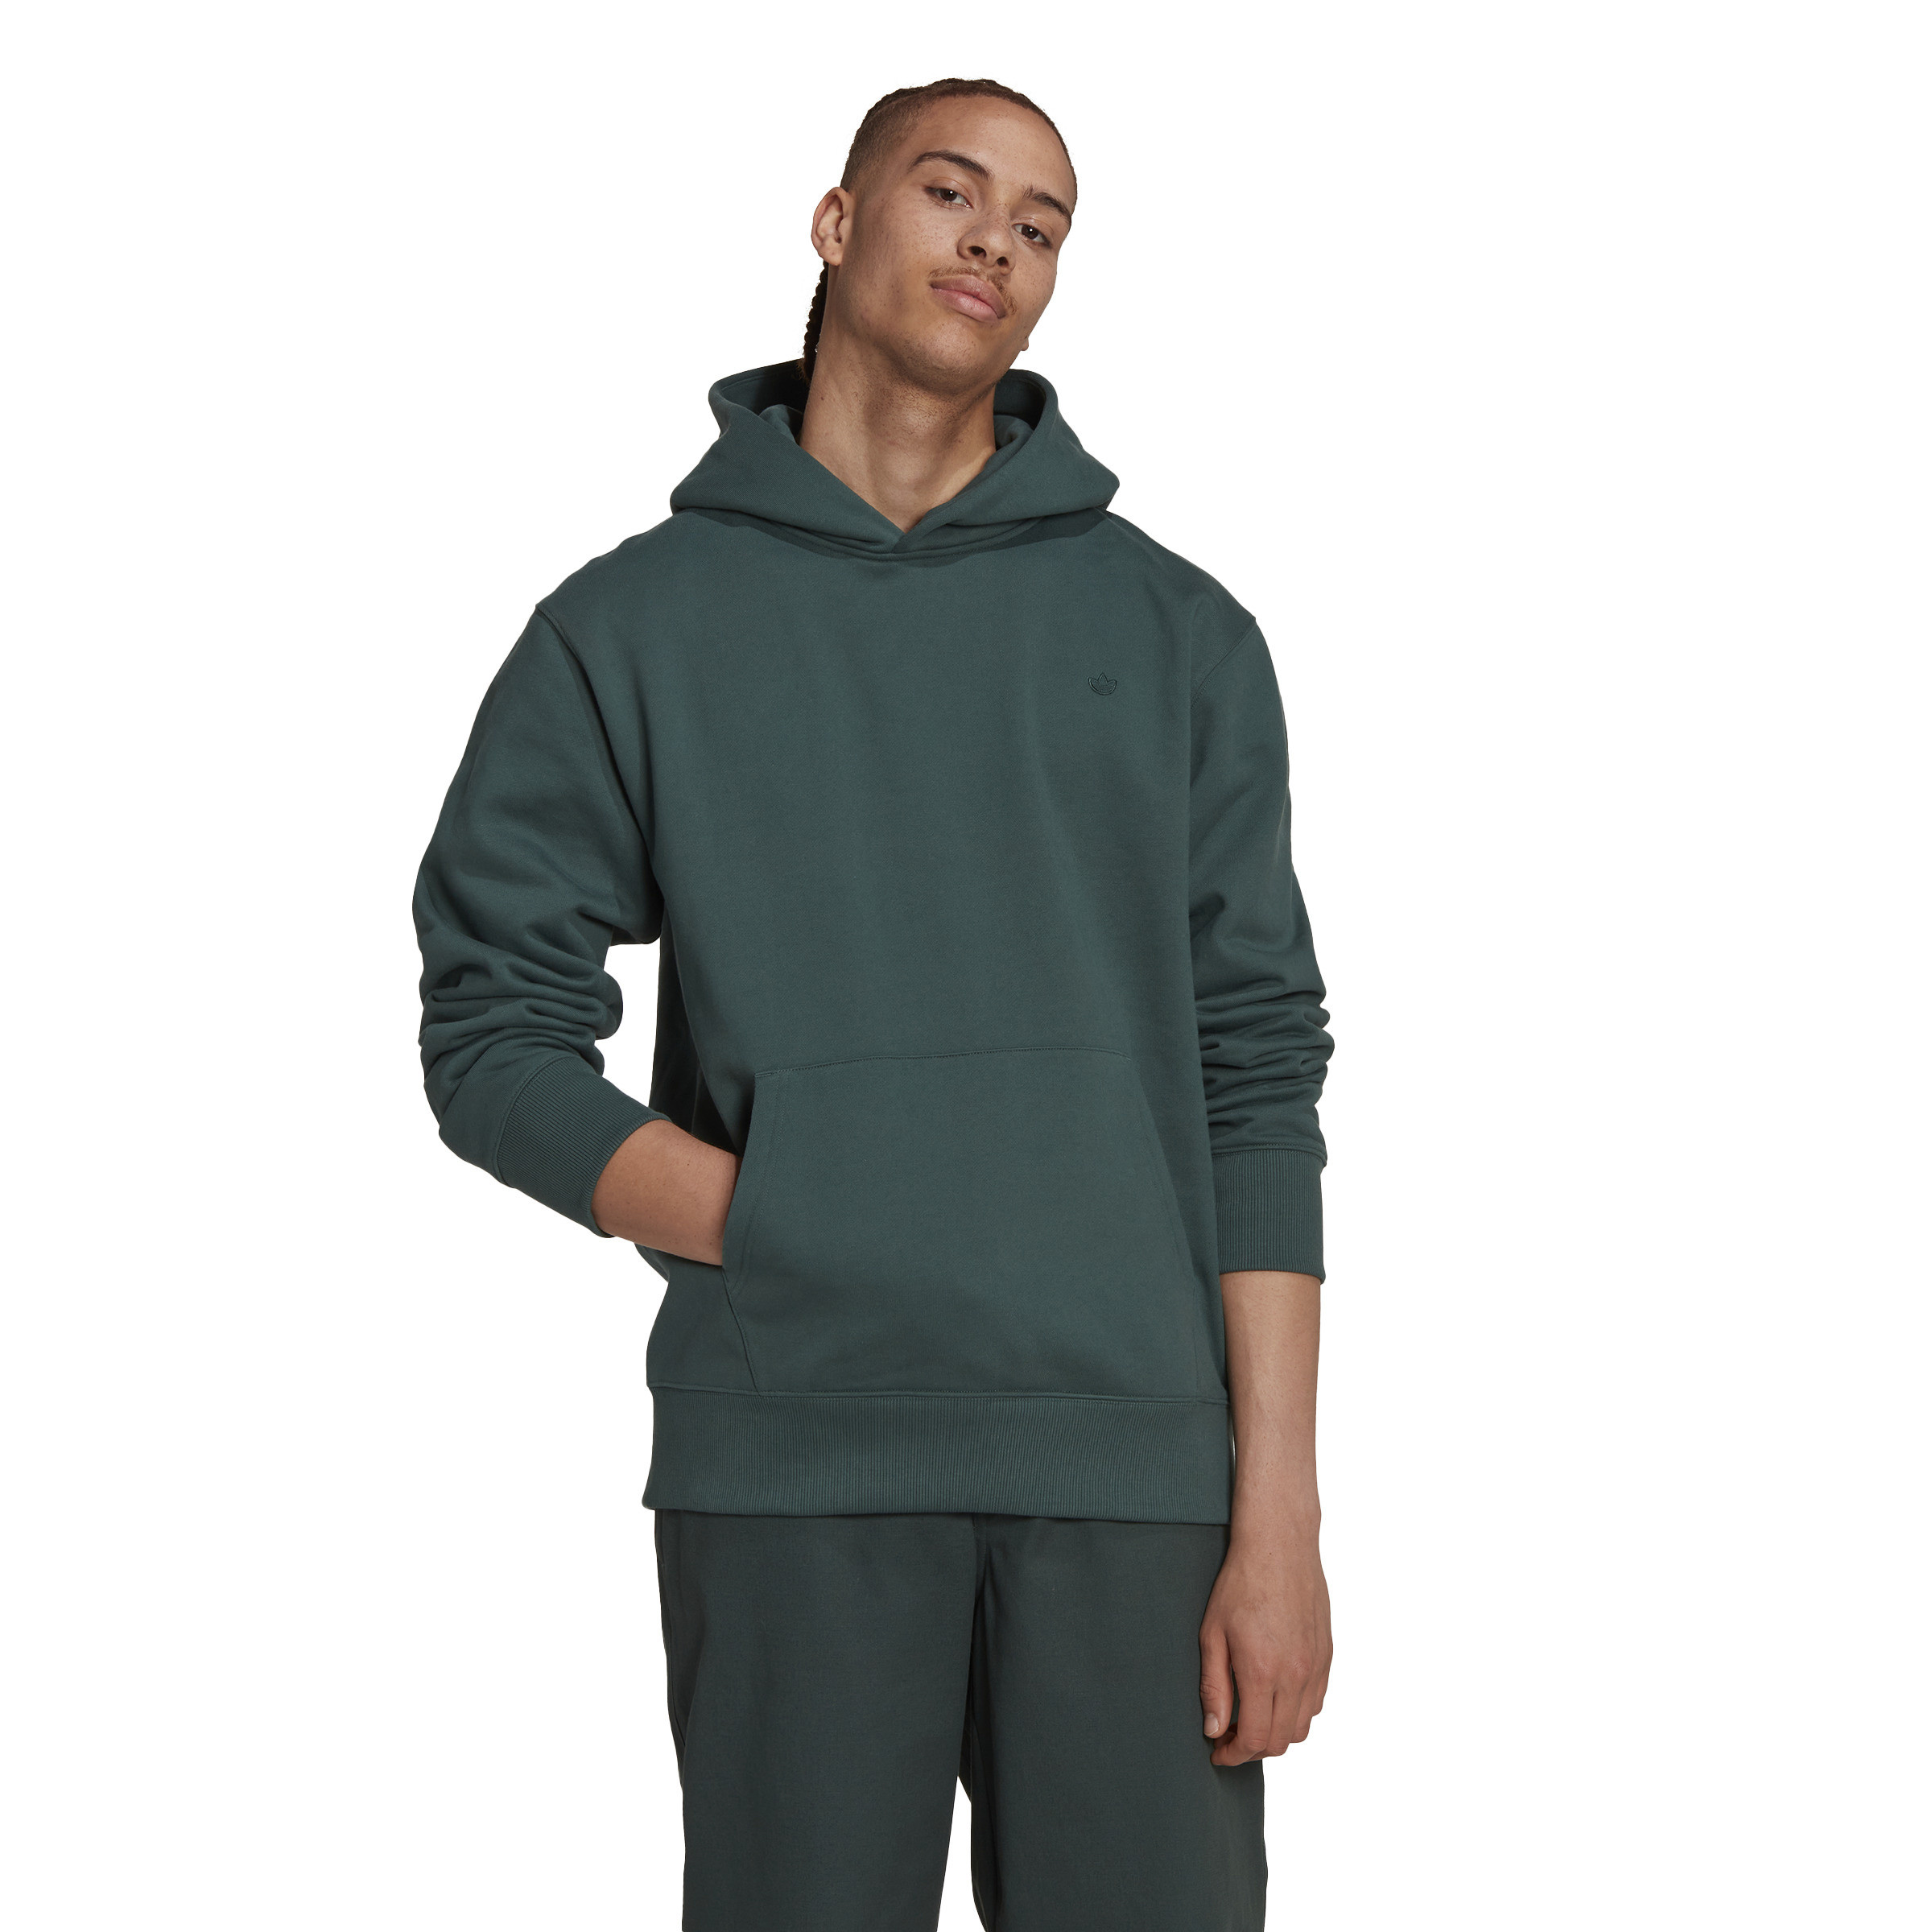 Adidas - Hooded sweatshirt adicolor, Dark Green, large image number 5